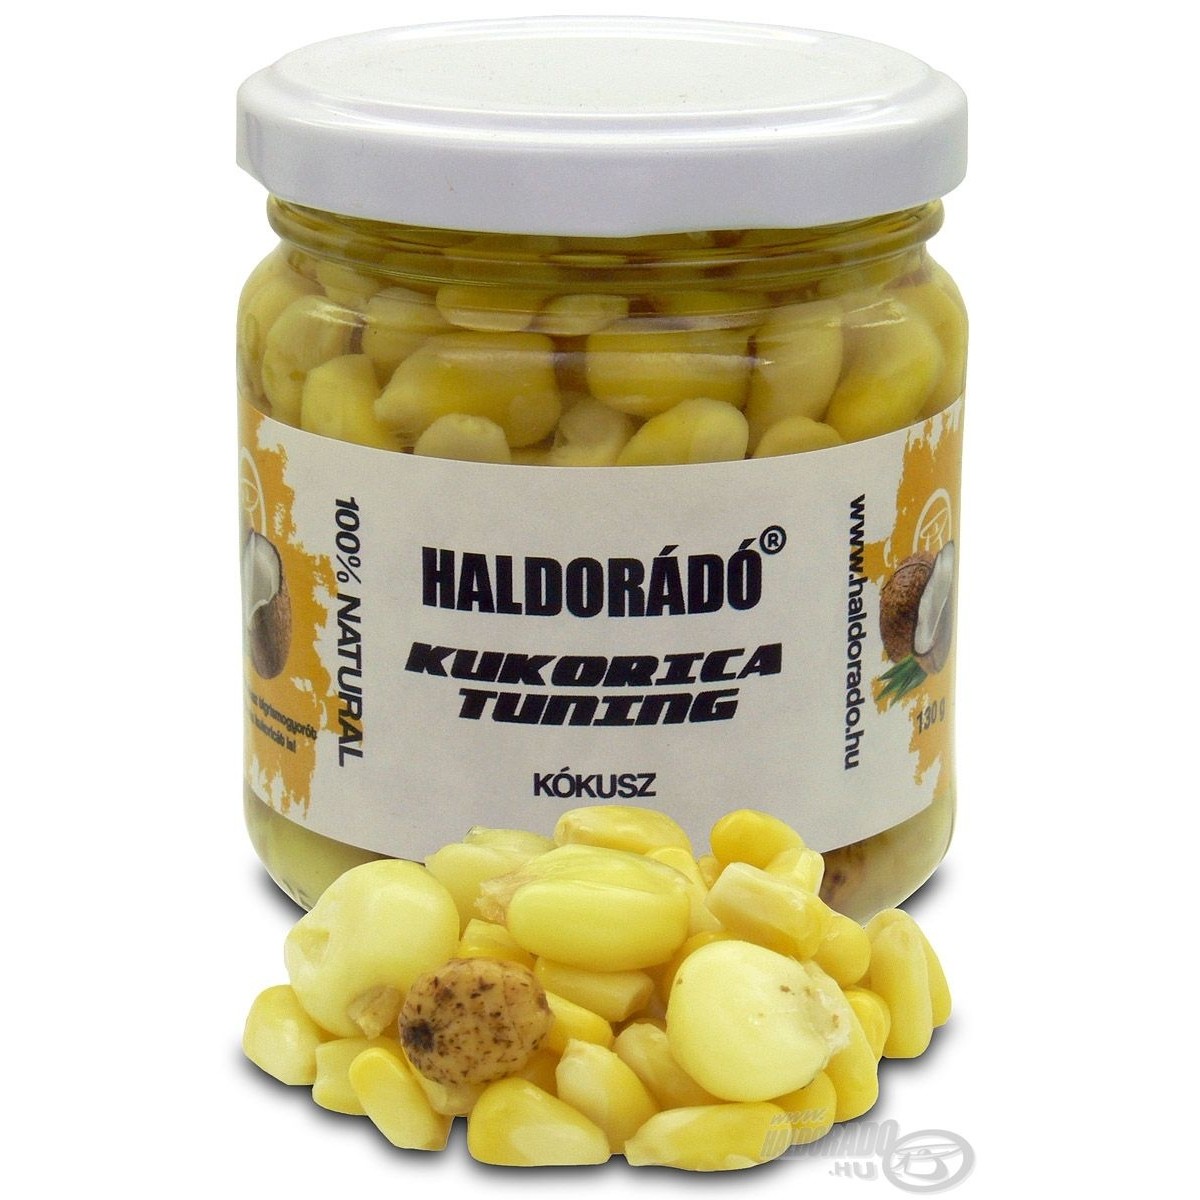 Porumb natural Haldorado Tuning - Cocos 130gr - HDCM-KT-KO